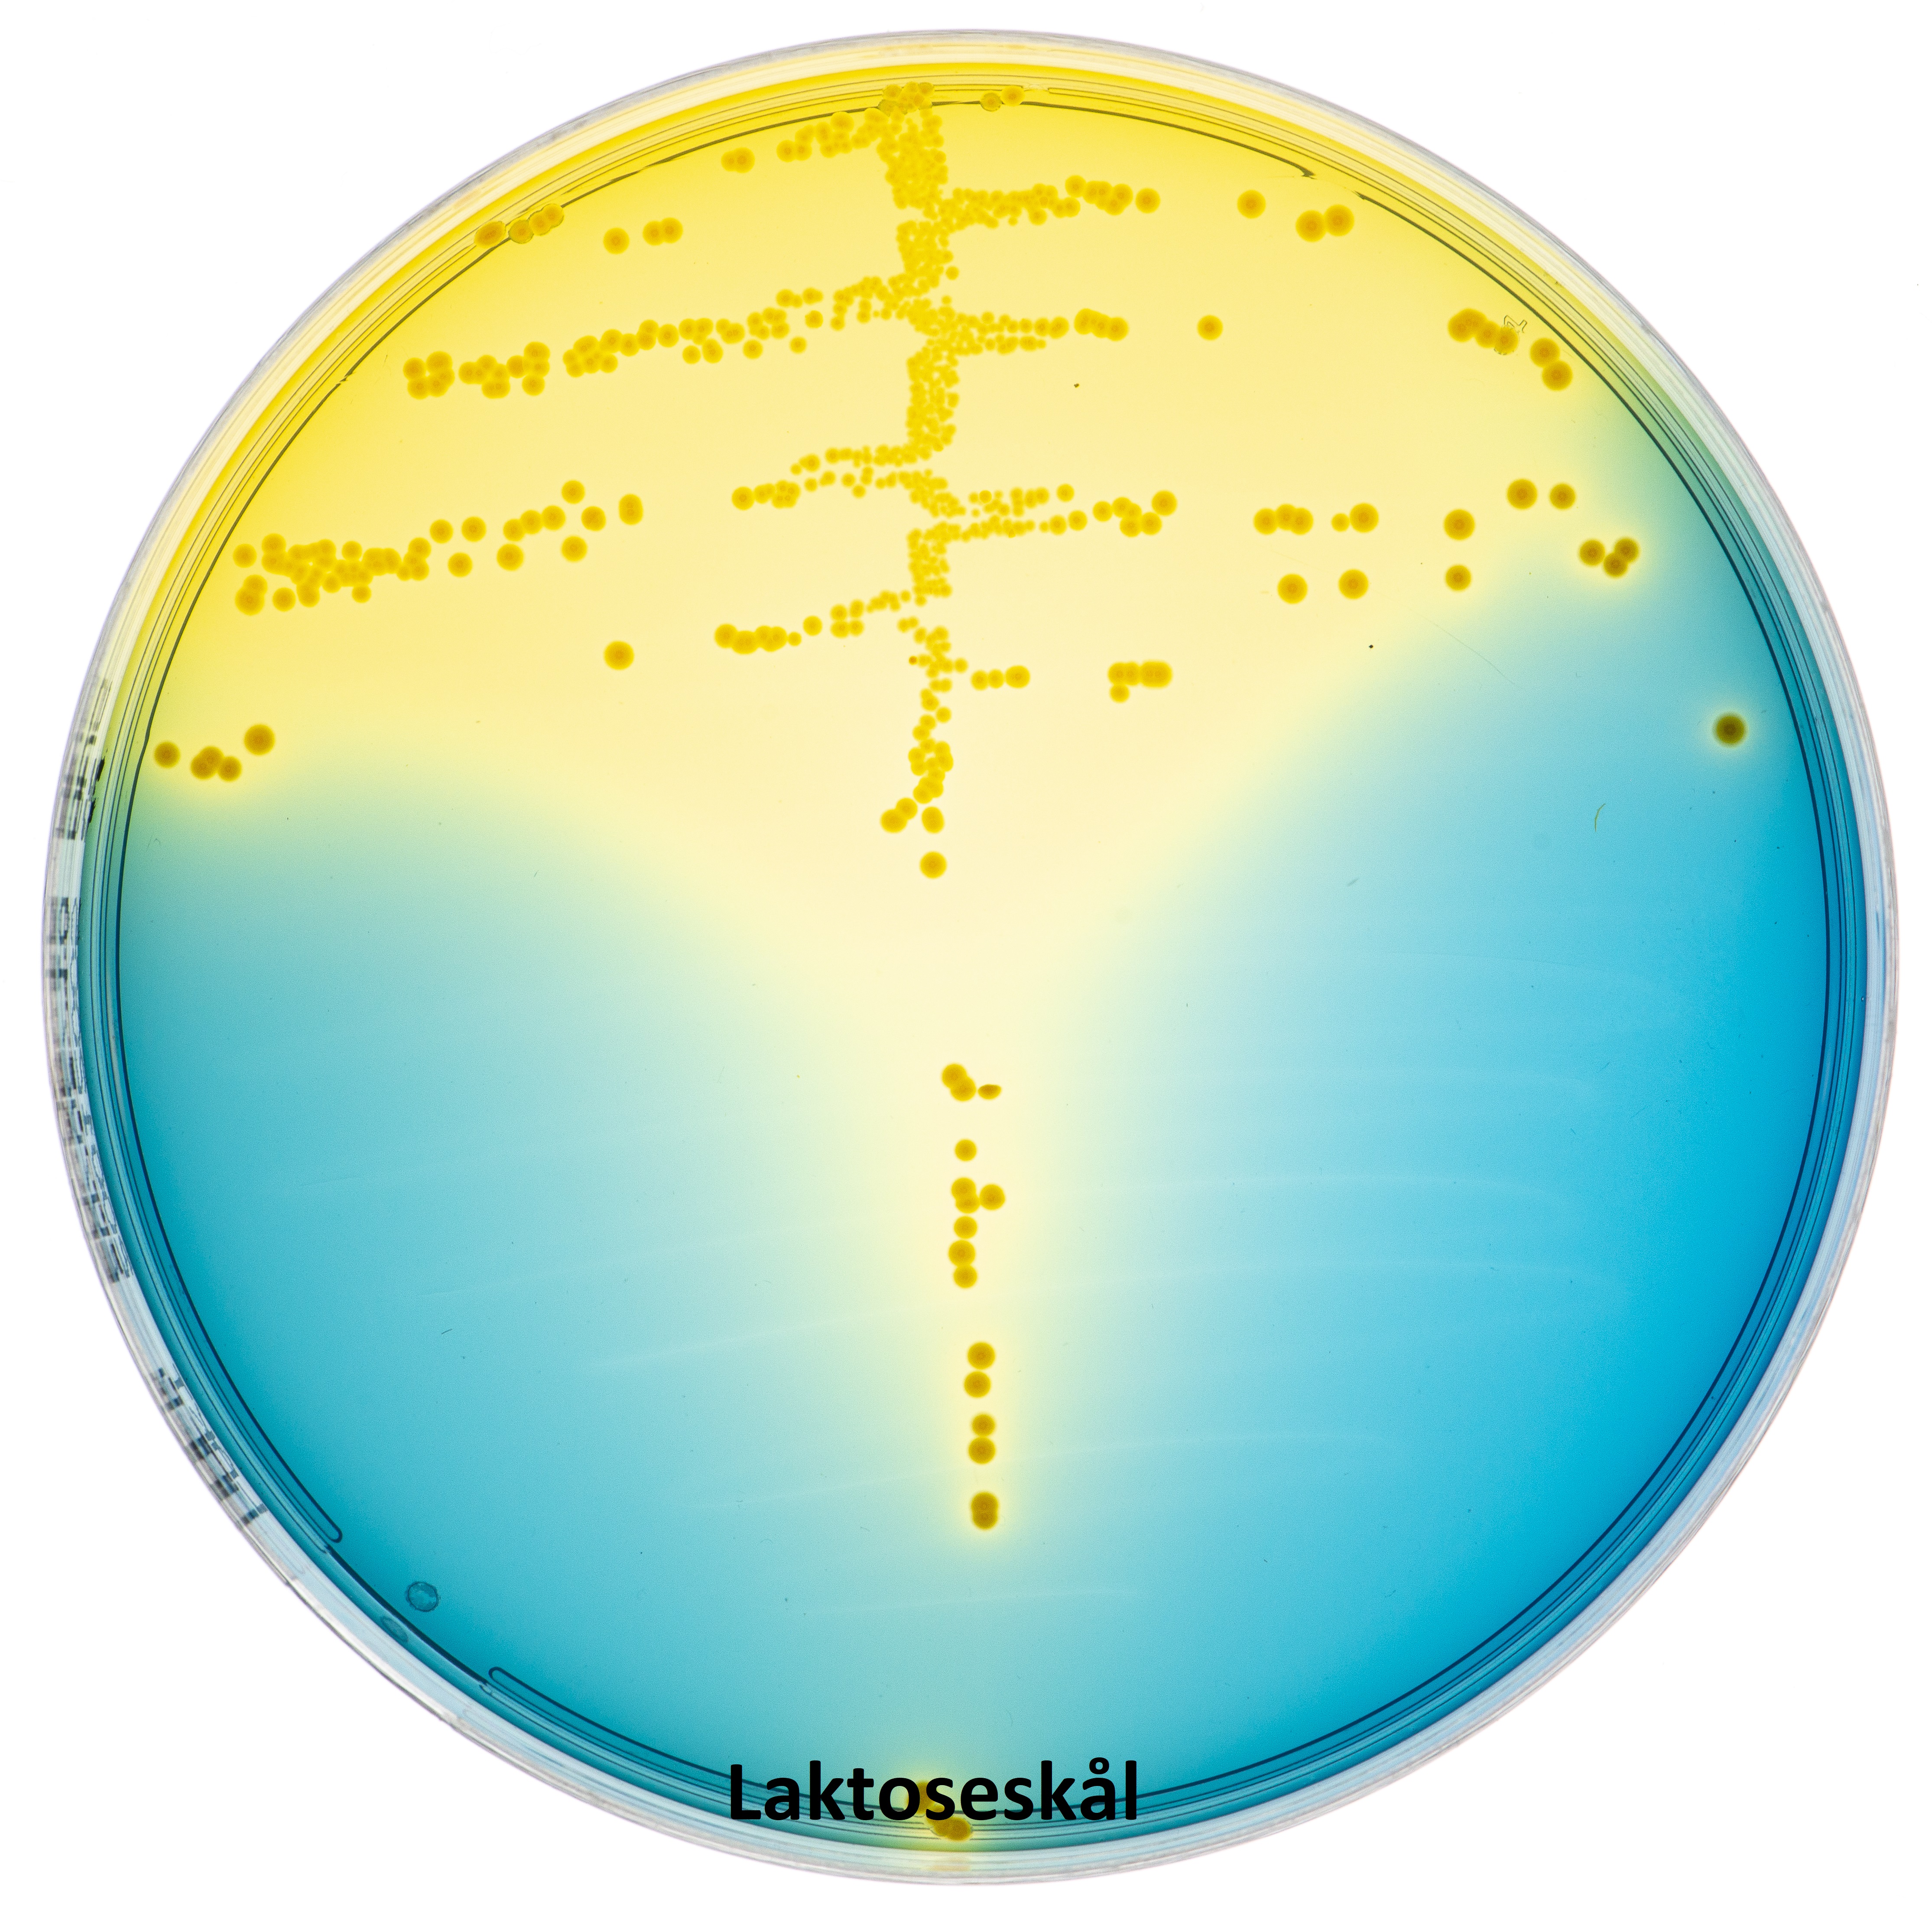 E.coli_urin_laktose